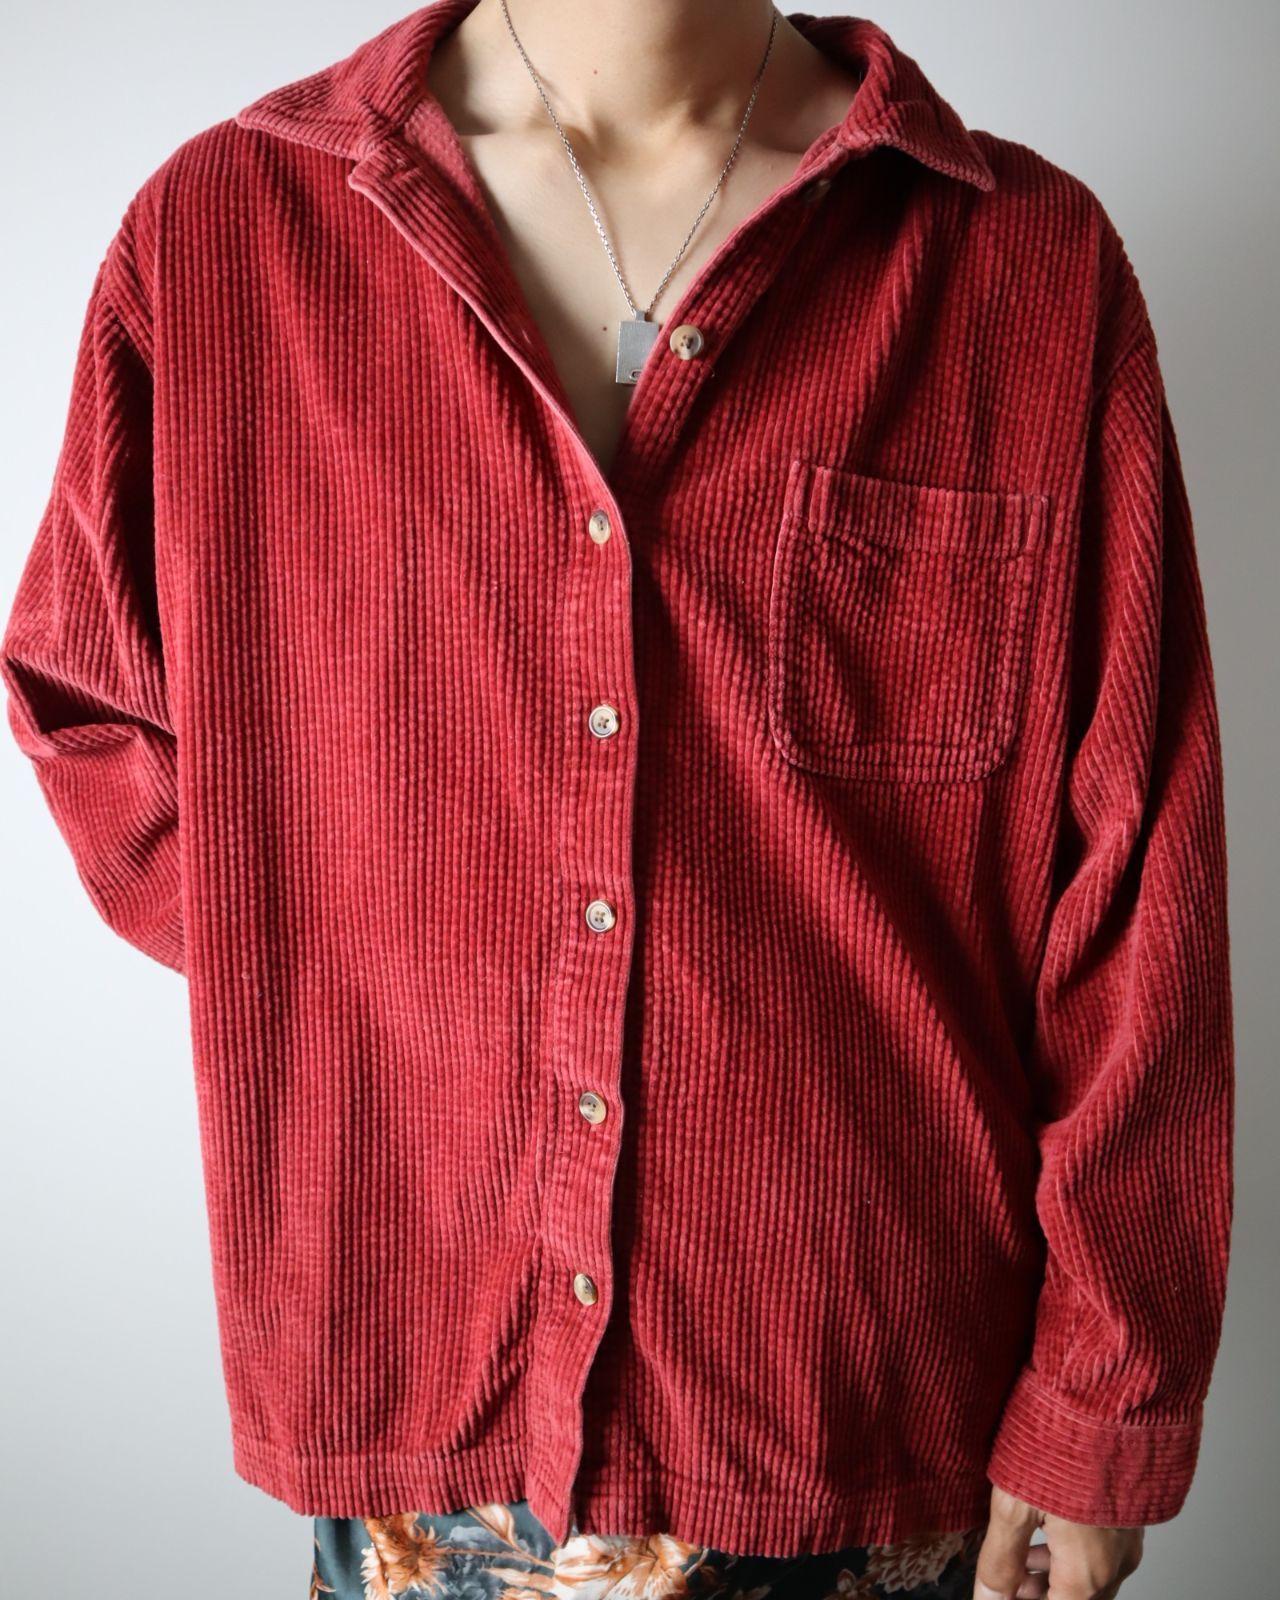 【L.L.Bean】太畝 肉厚 コーデュロイ ボックスカット 長袖シャツ 赤